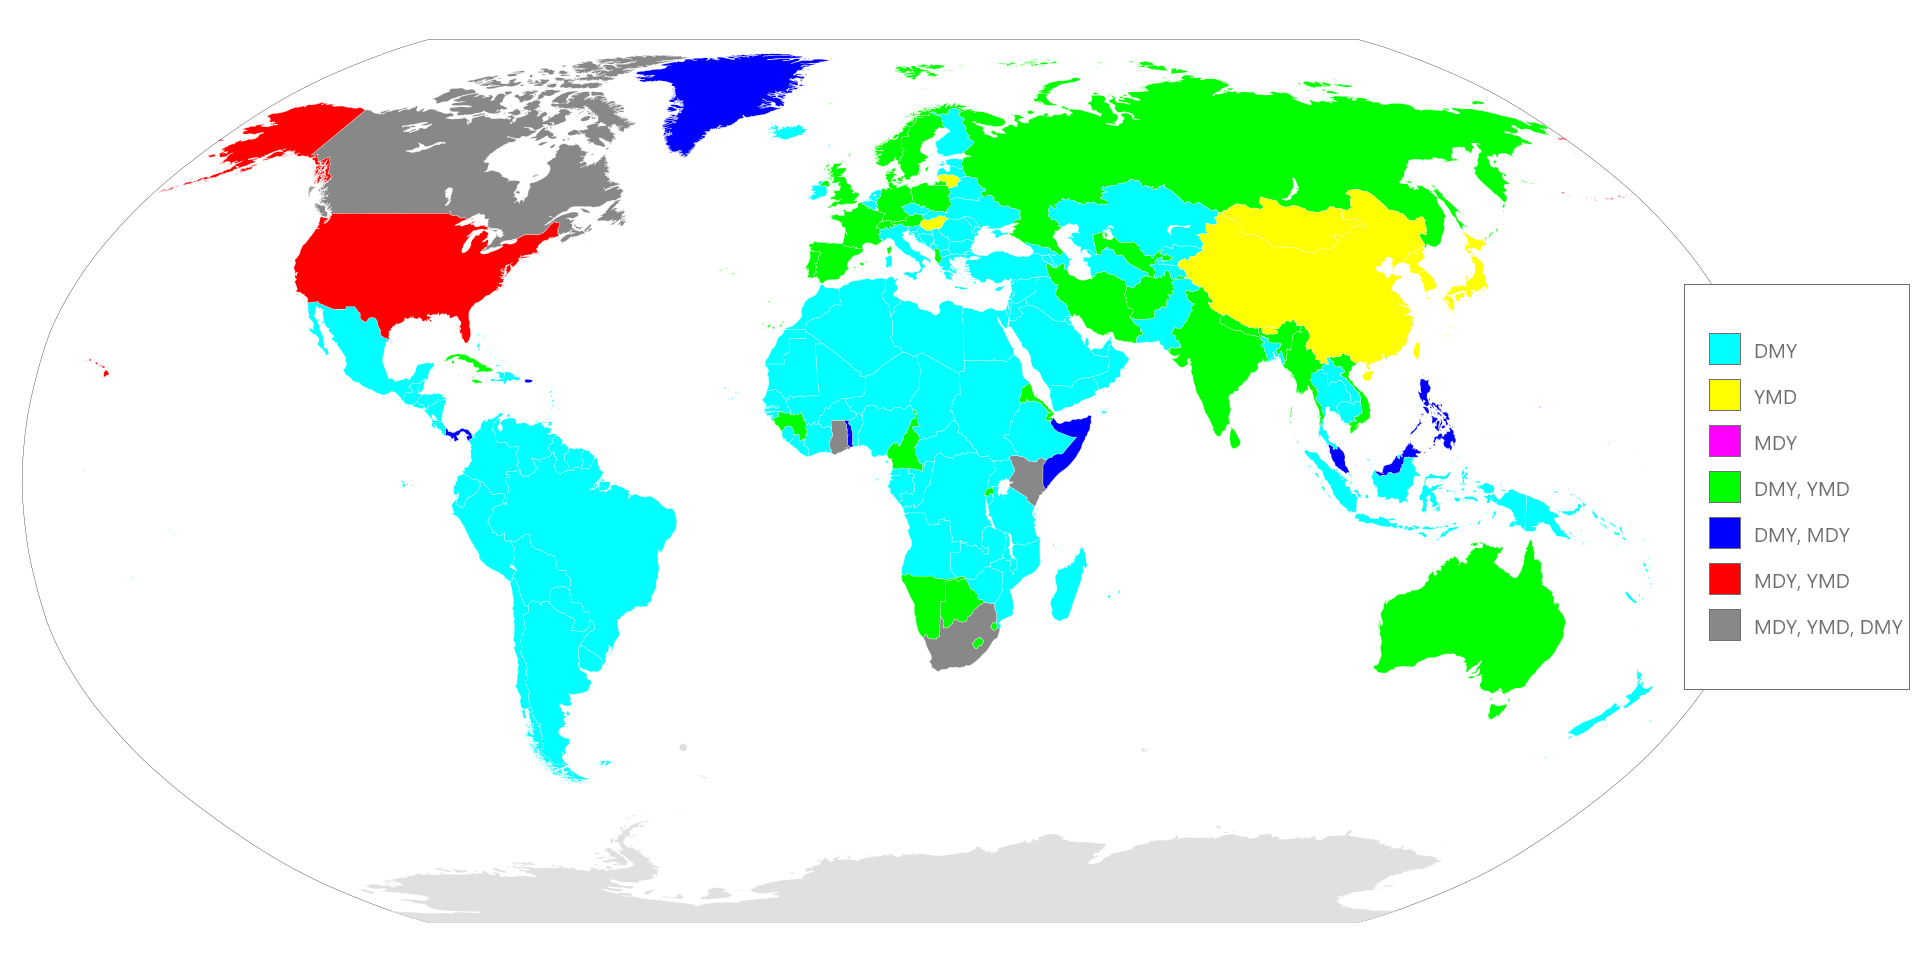 維基百科上 7 種日期格式習慣的地區分佈，https://en.wikipedia.org/wiki/Date_format_by_country